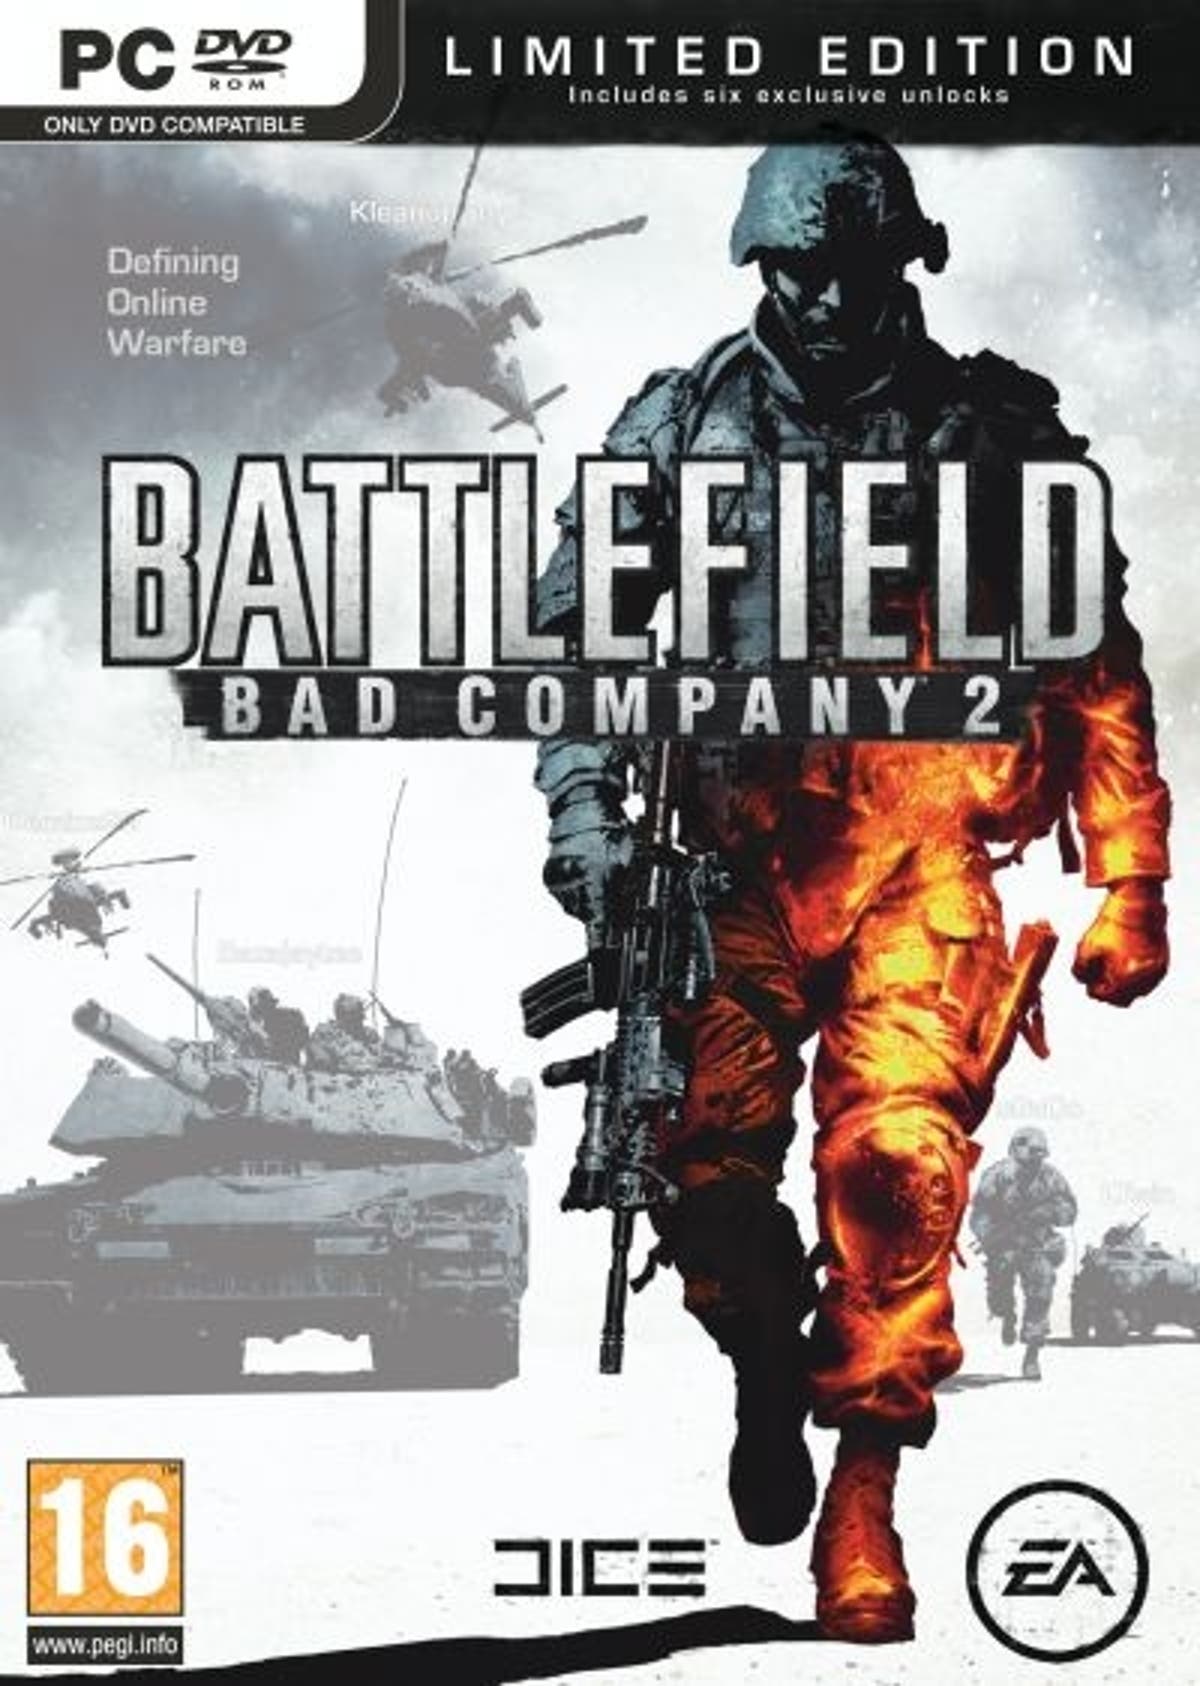 Battlefield: do pior para o melhor, segundo o Metacritic